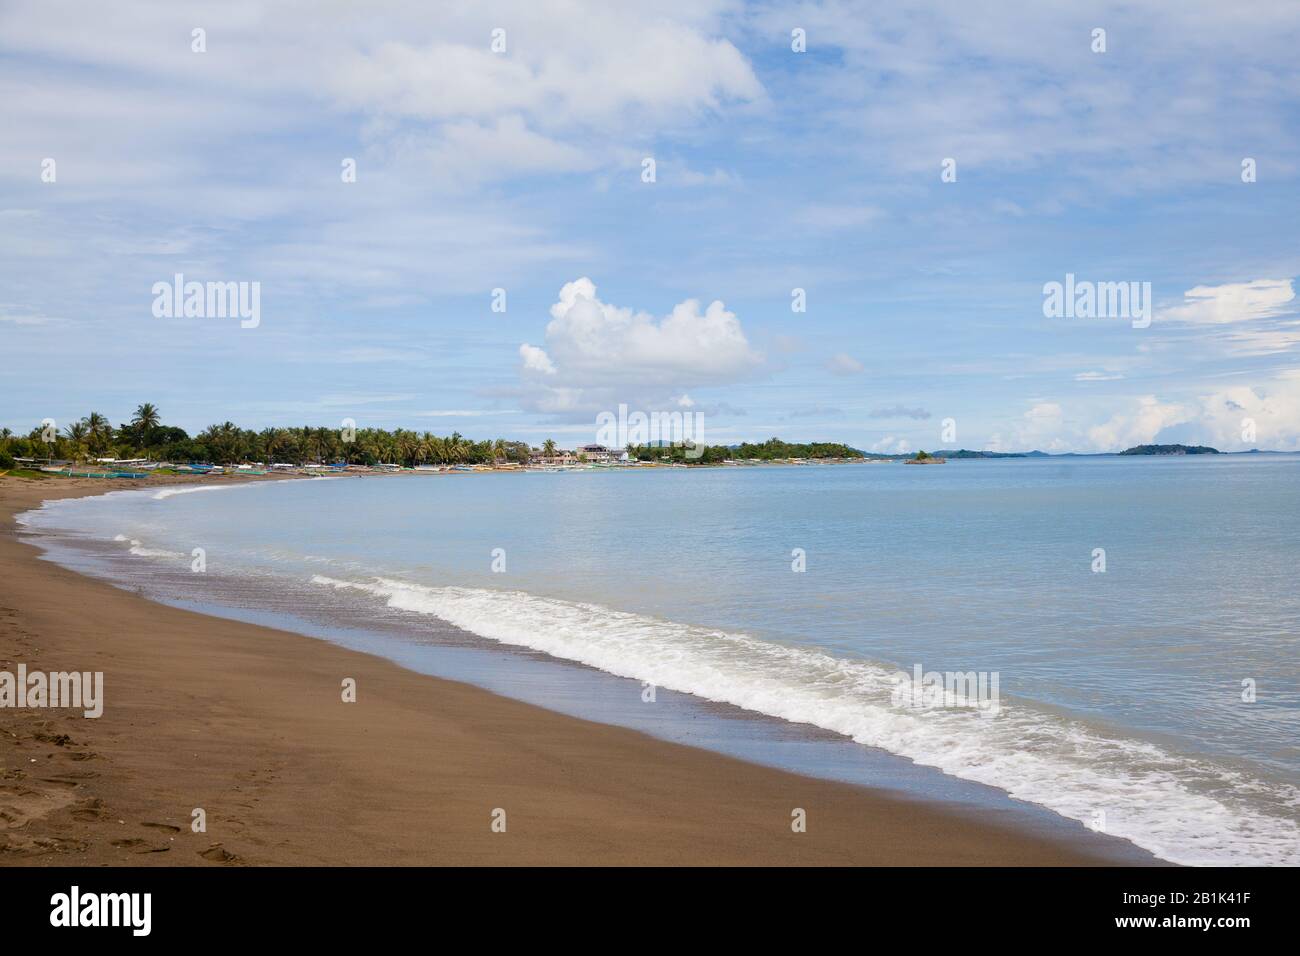 Côte de mer avec une plage de sable. Îles Caramoan, Philippines. Concept de vacances d'été et de voyage. Banque D'Images